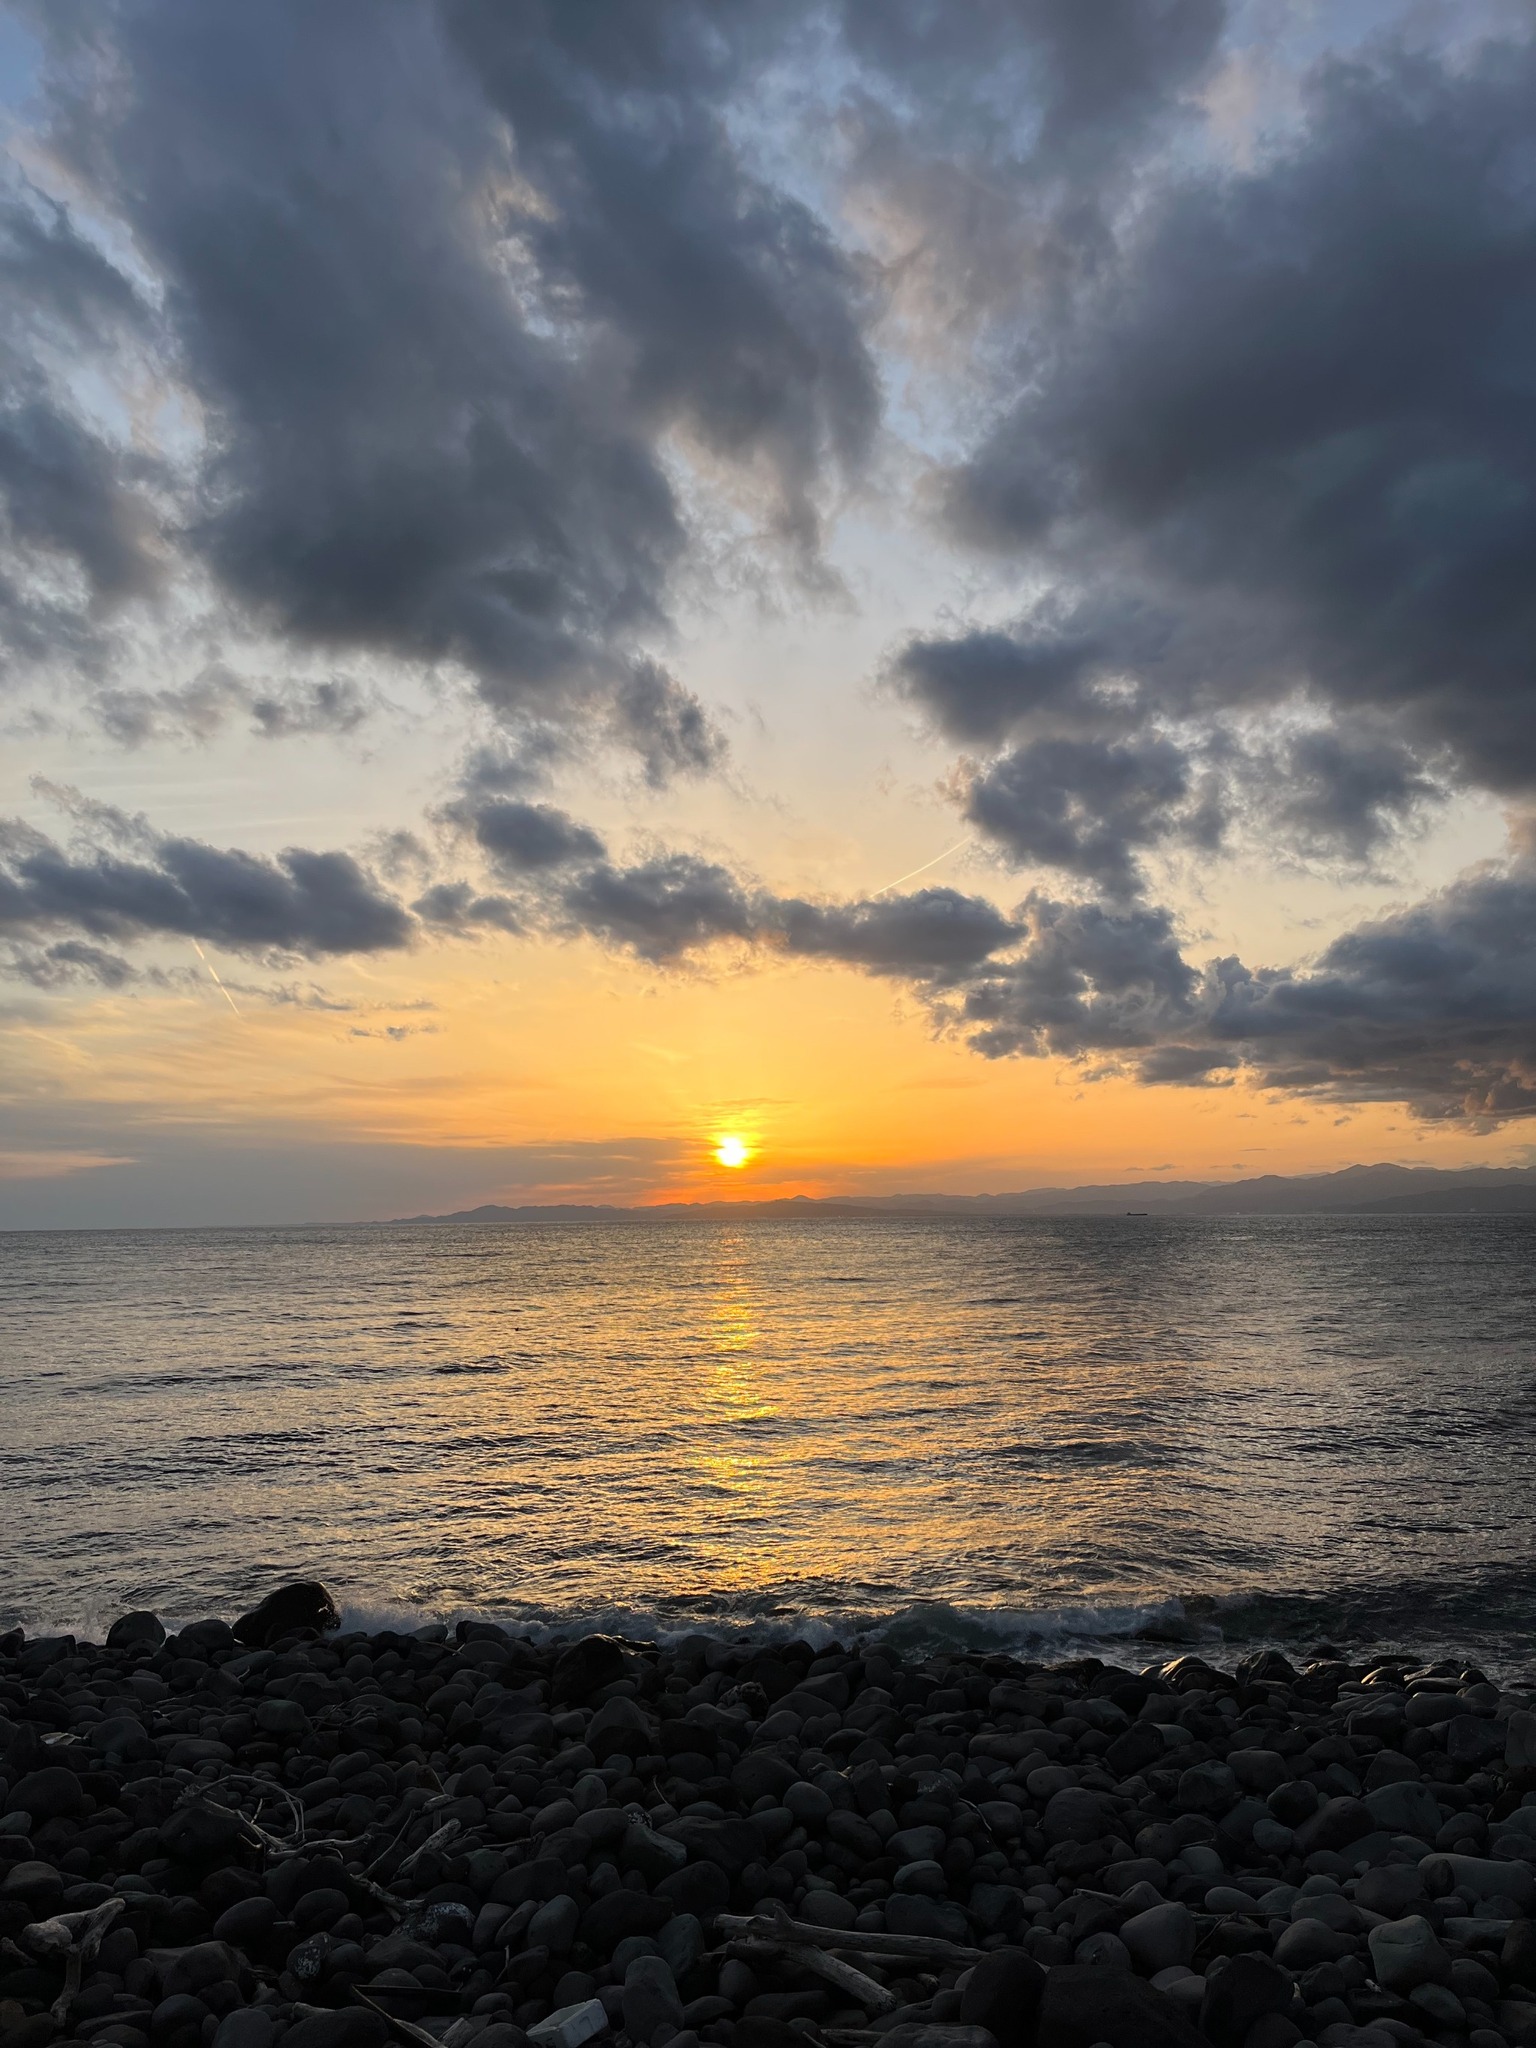 御浜岬の至福を一身に味わう。一軒家貸切宿で贅沢なBBQを楽しみながら夕陽に染まる戸田湾の美しさを満喫